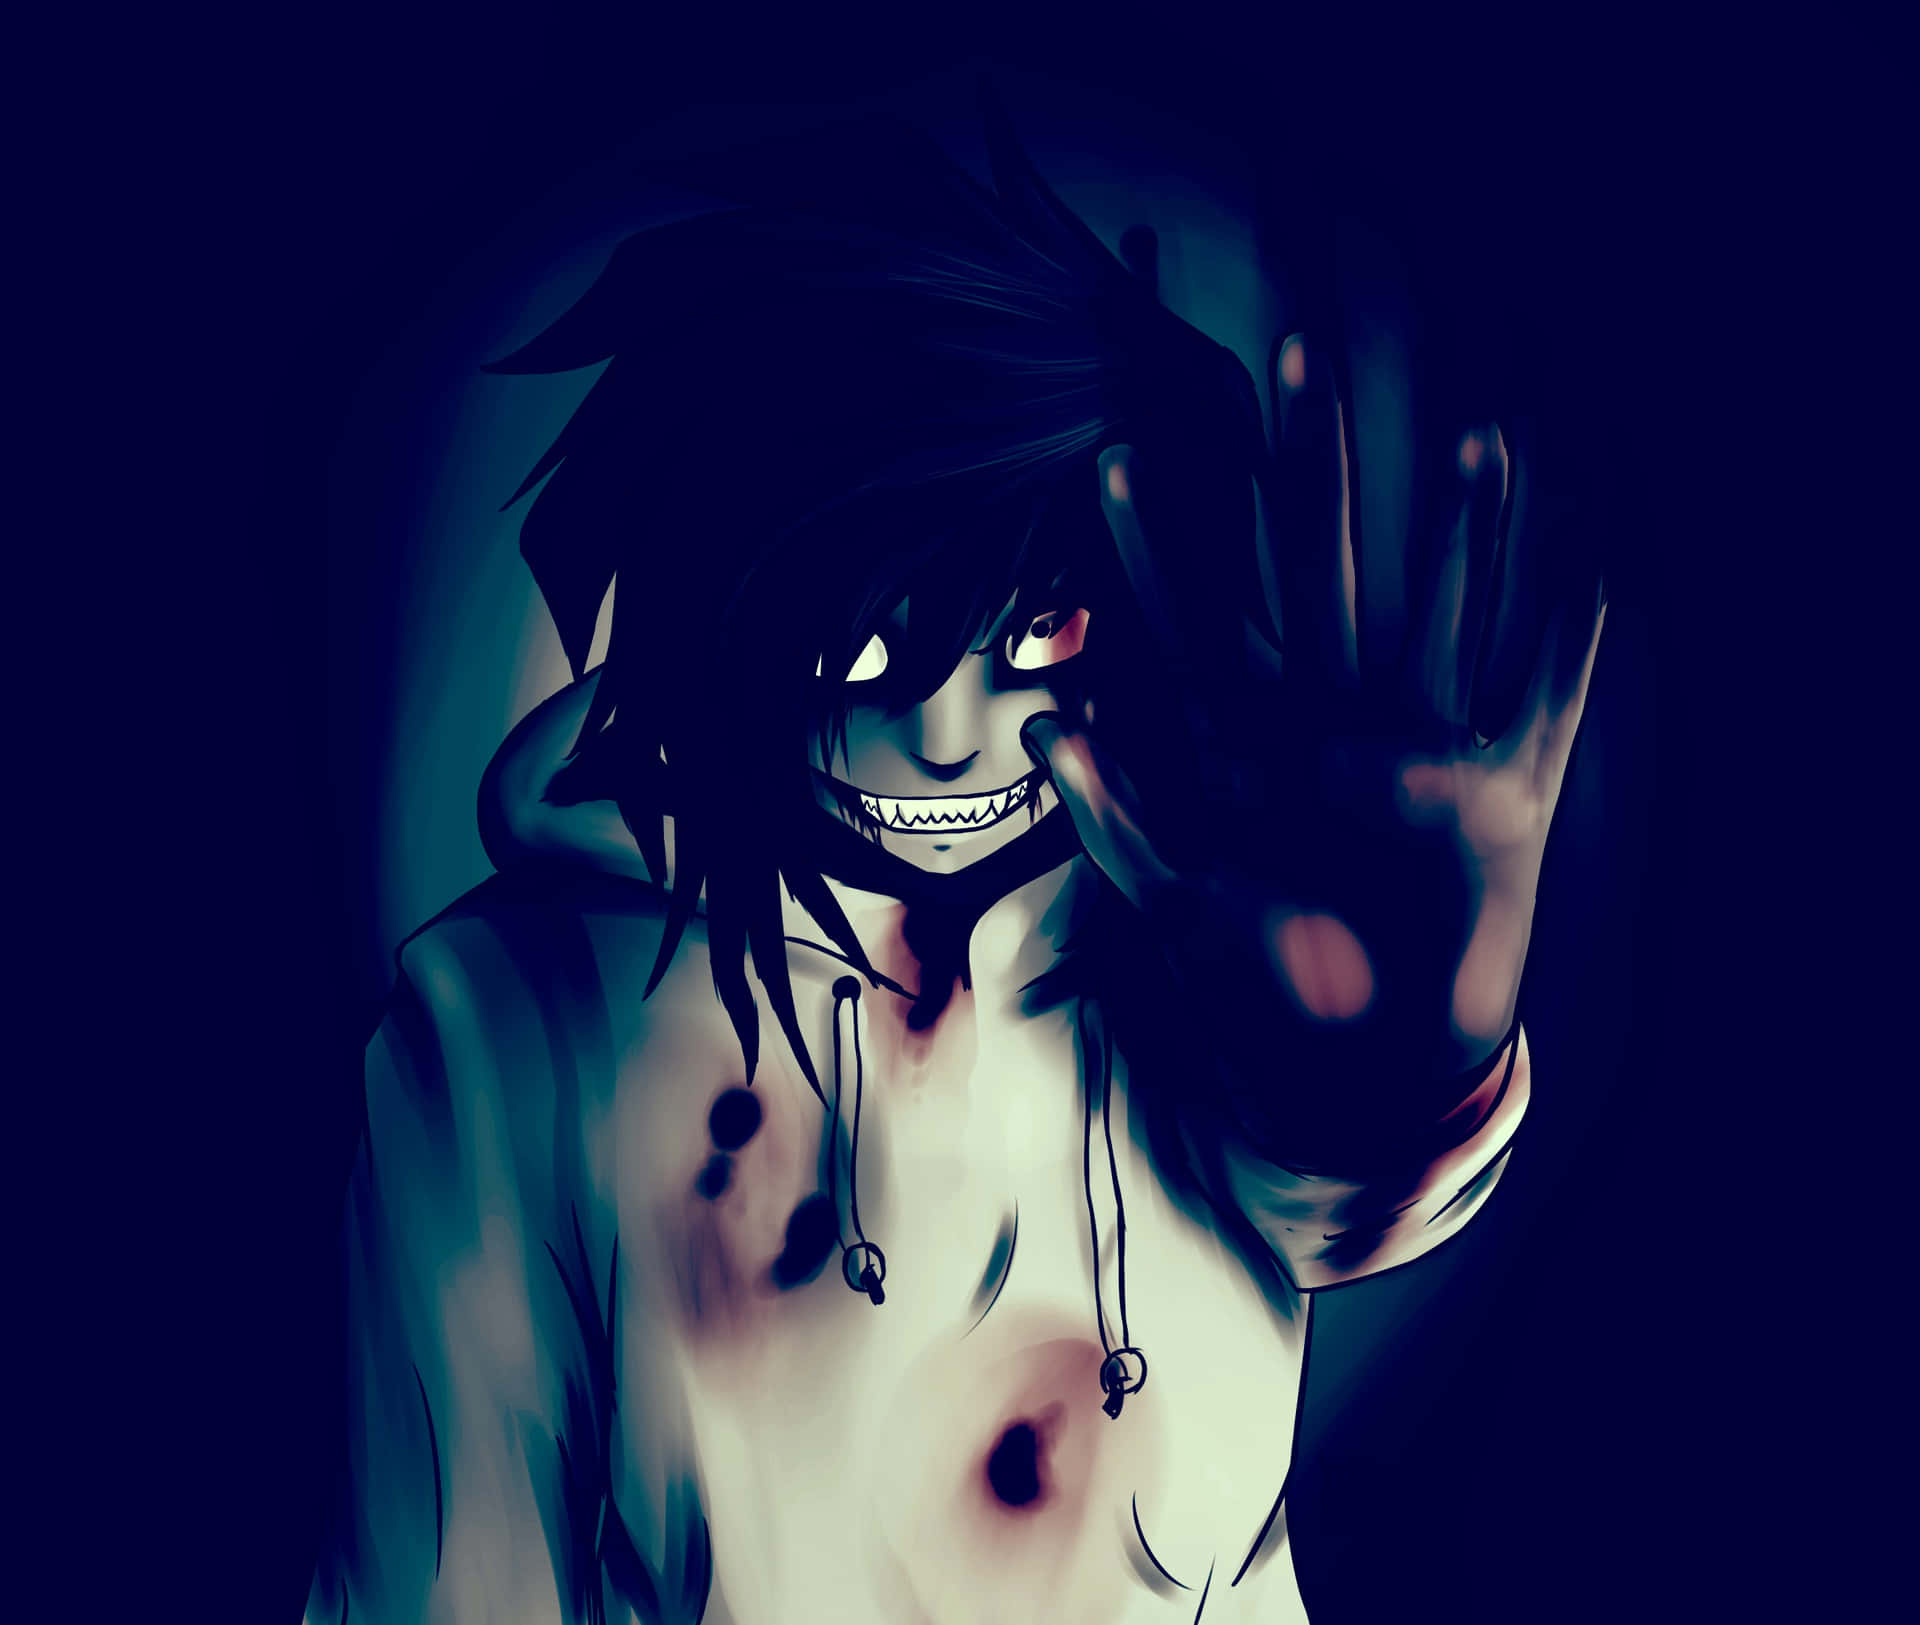 En mørk anime-karakter med hænderne i vejret. Wallpaper